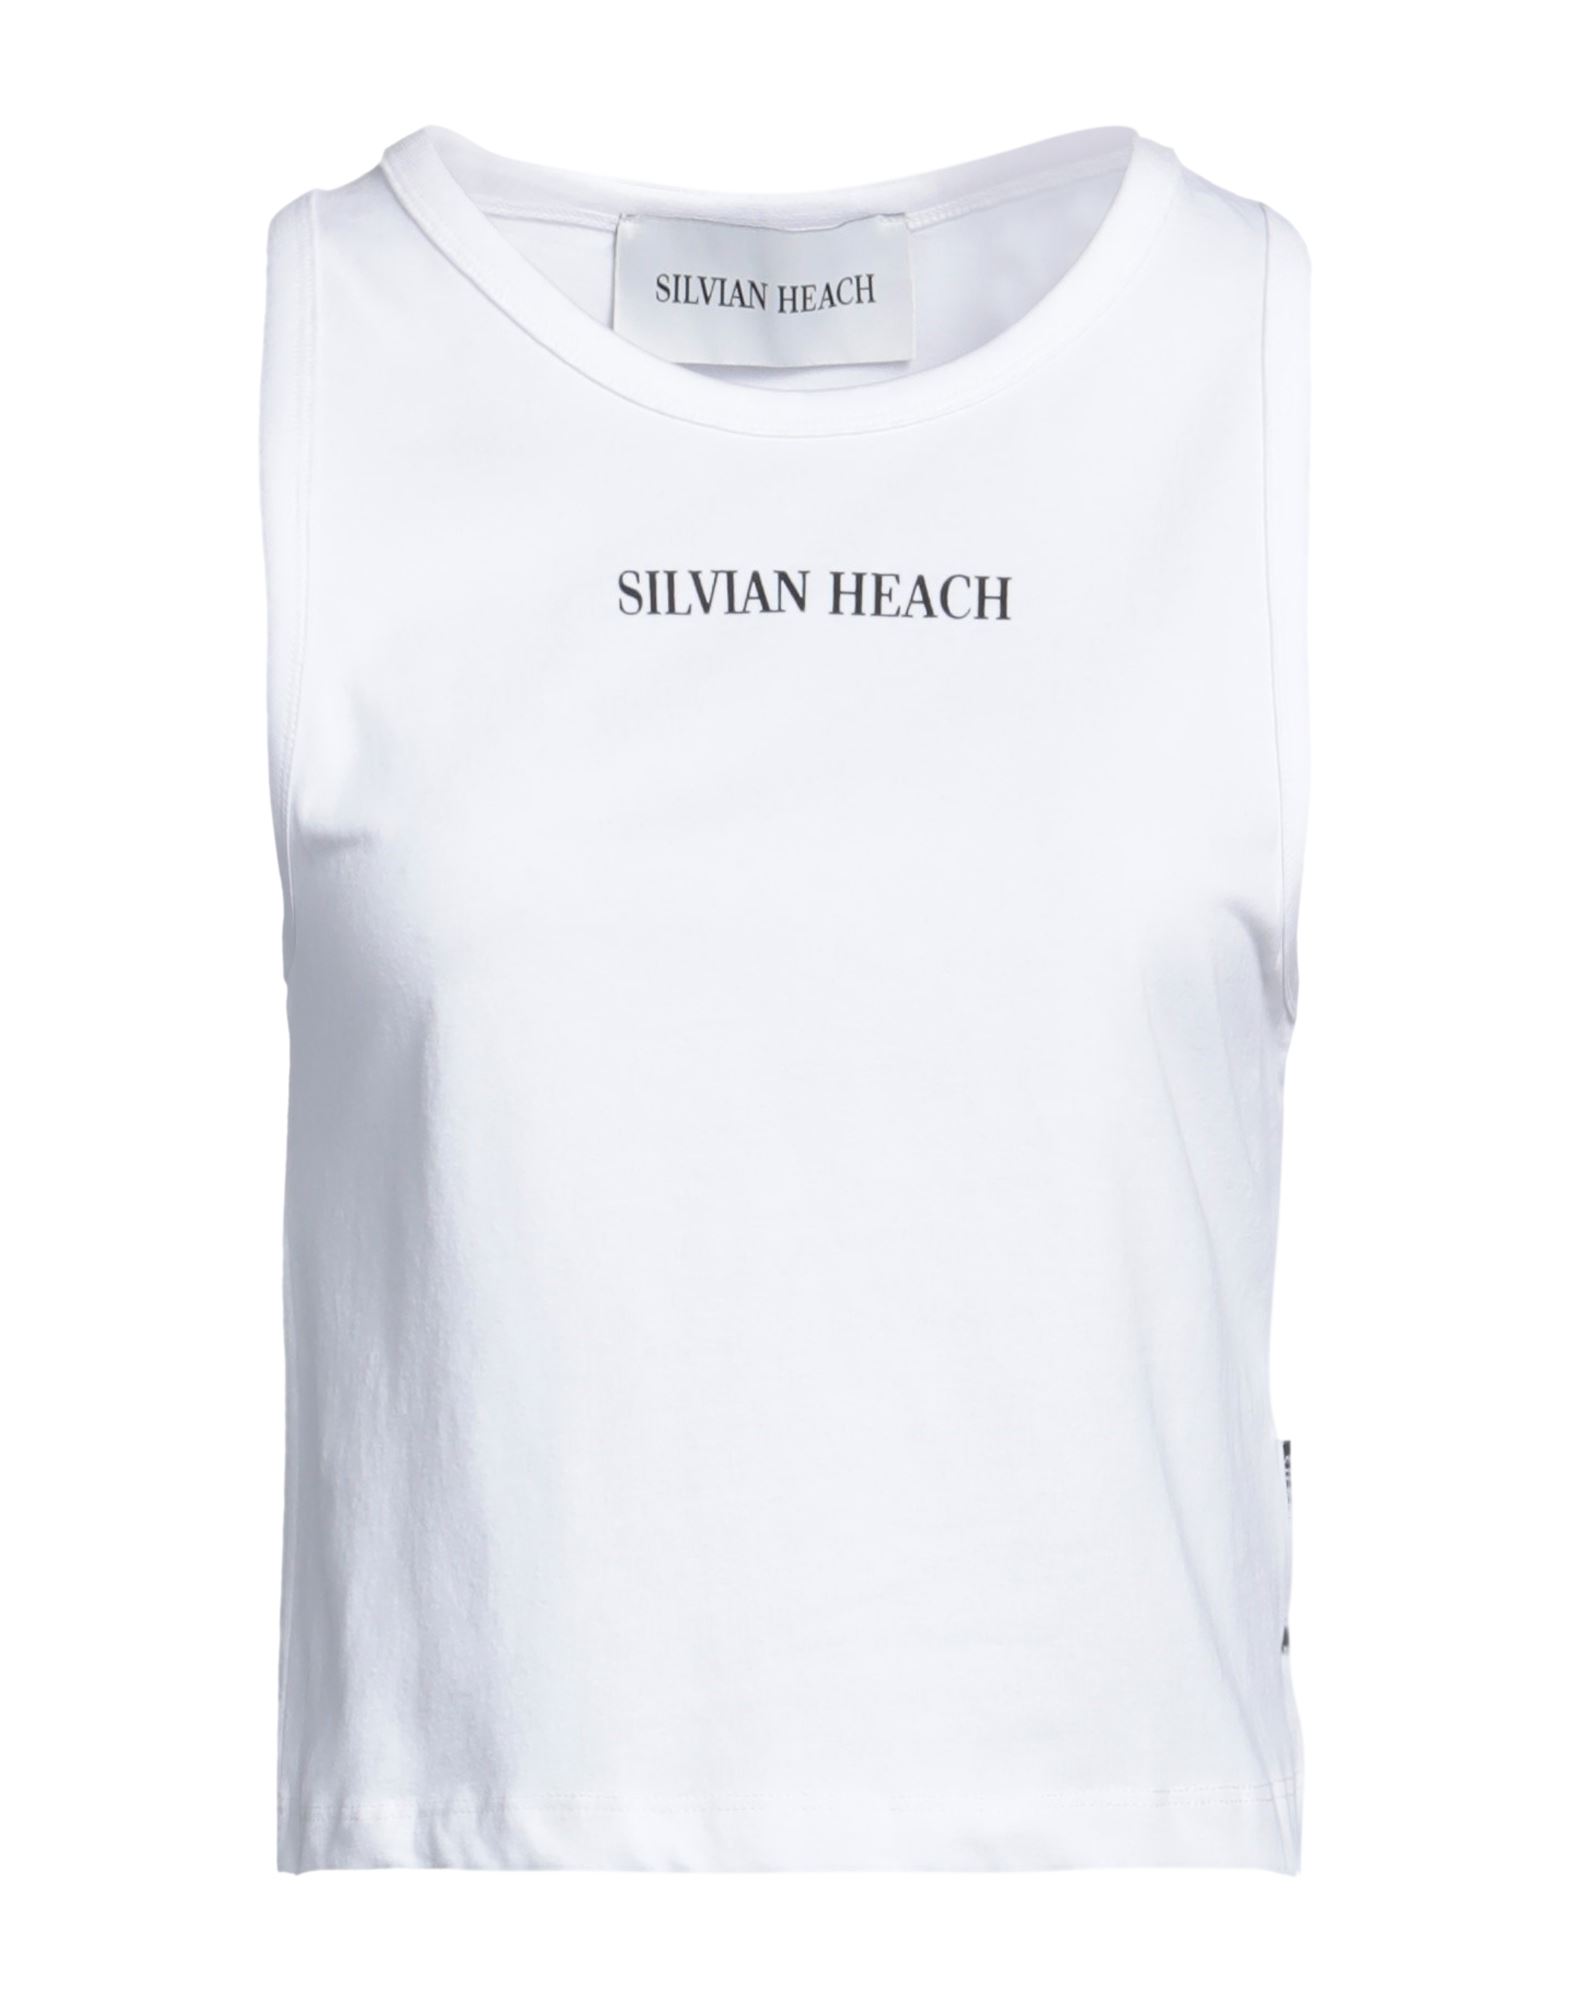 Silvian Heach Tops In White